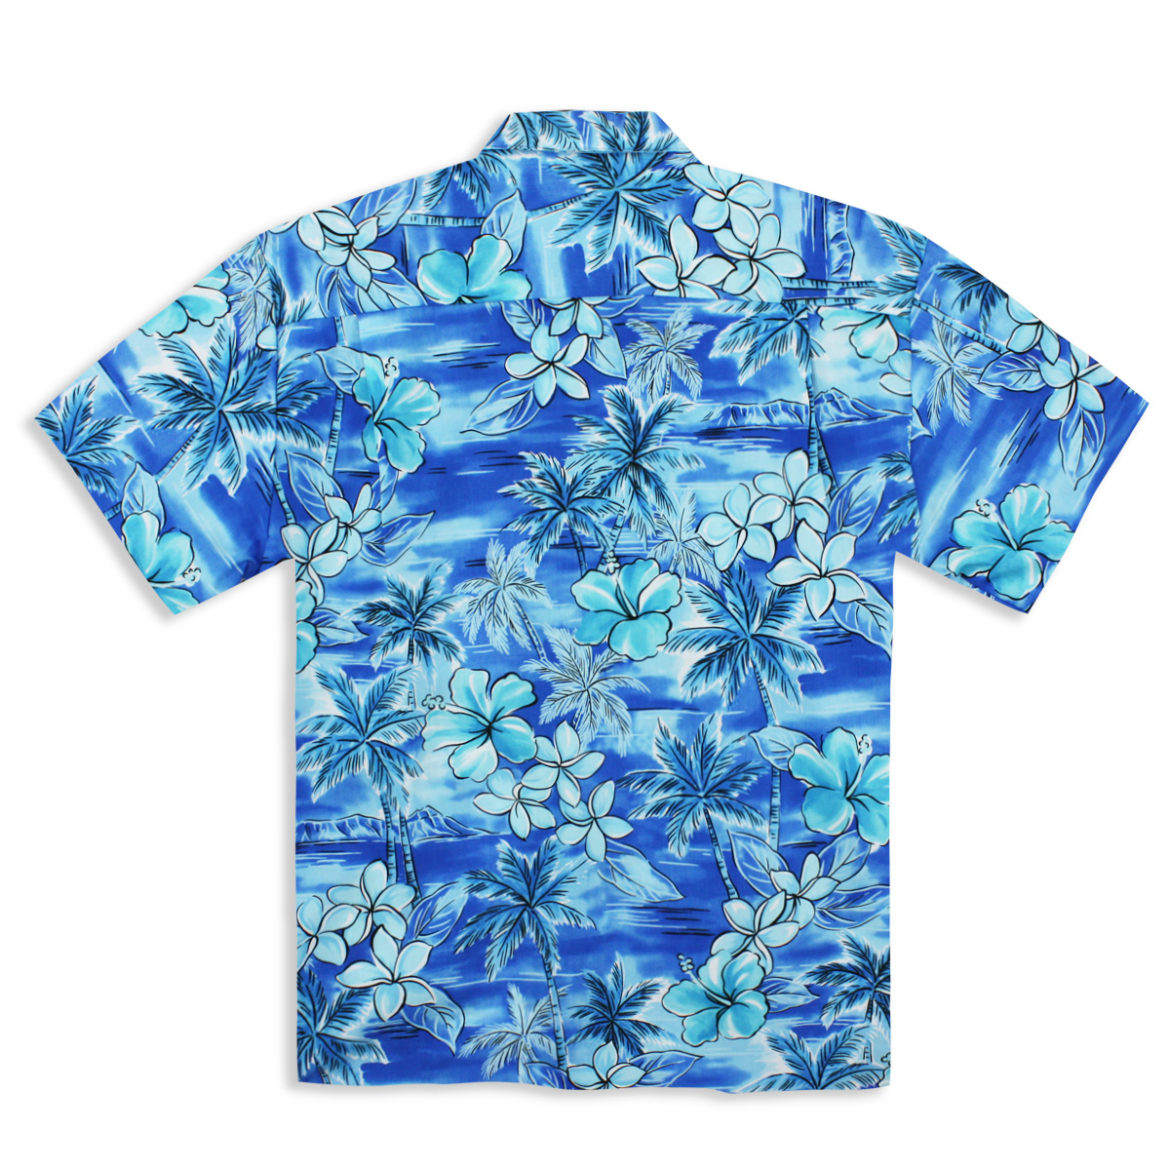 Men's Tropical Shirts and Hawaiian Aloha Shirts | Tropaholic.com